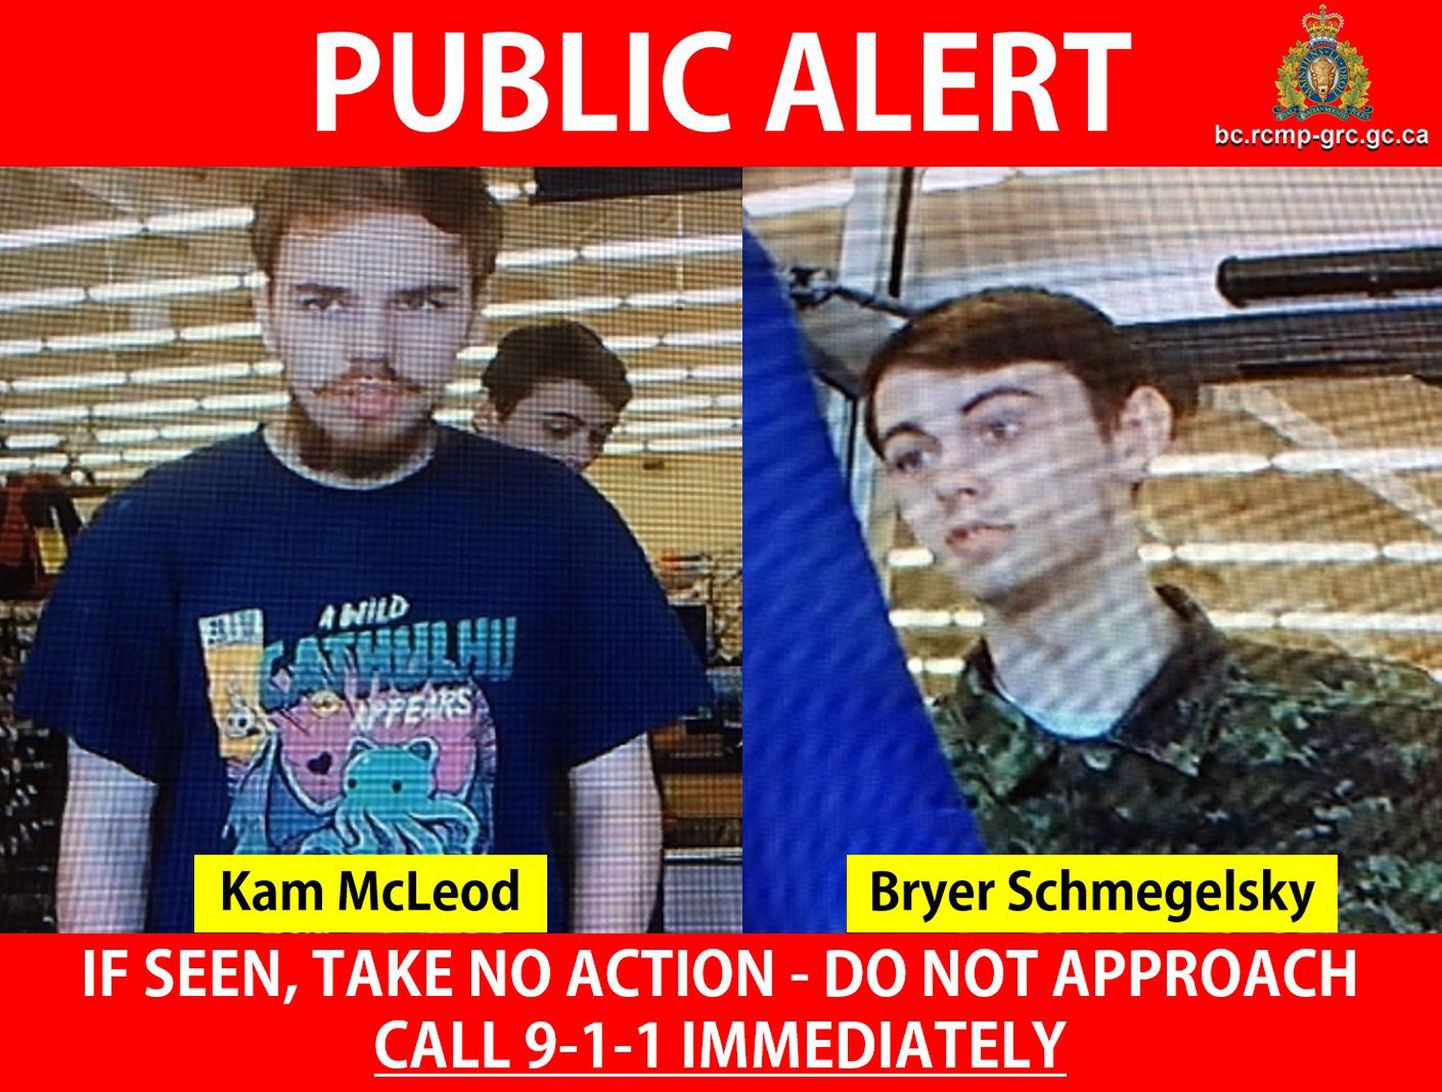 Kolme inimese mõrvas kahtlustatavad Kam McLeod (19) and Bryer Schmegelsky (18).